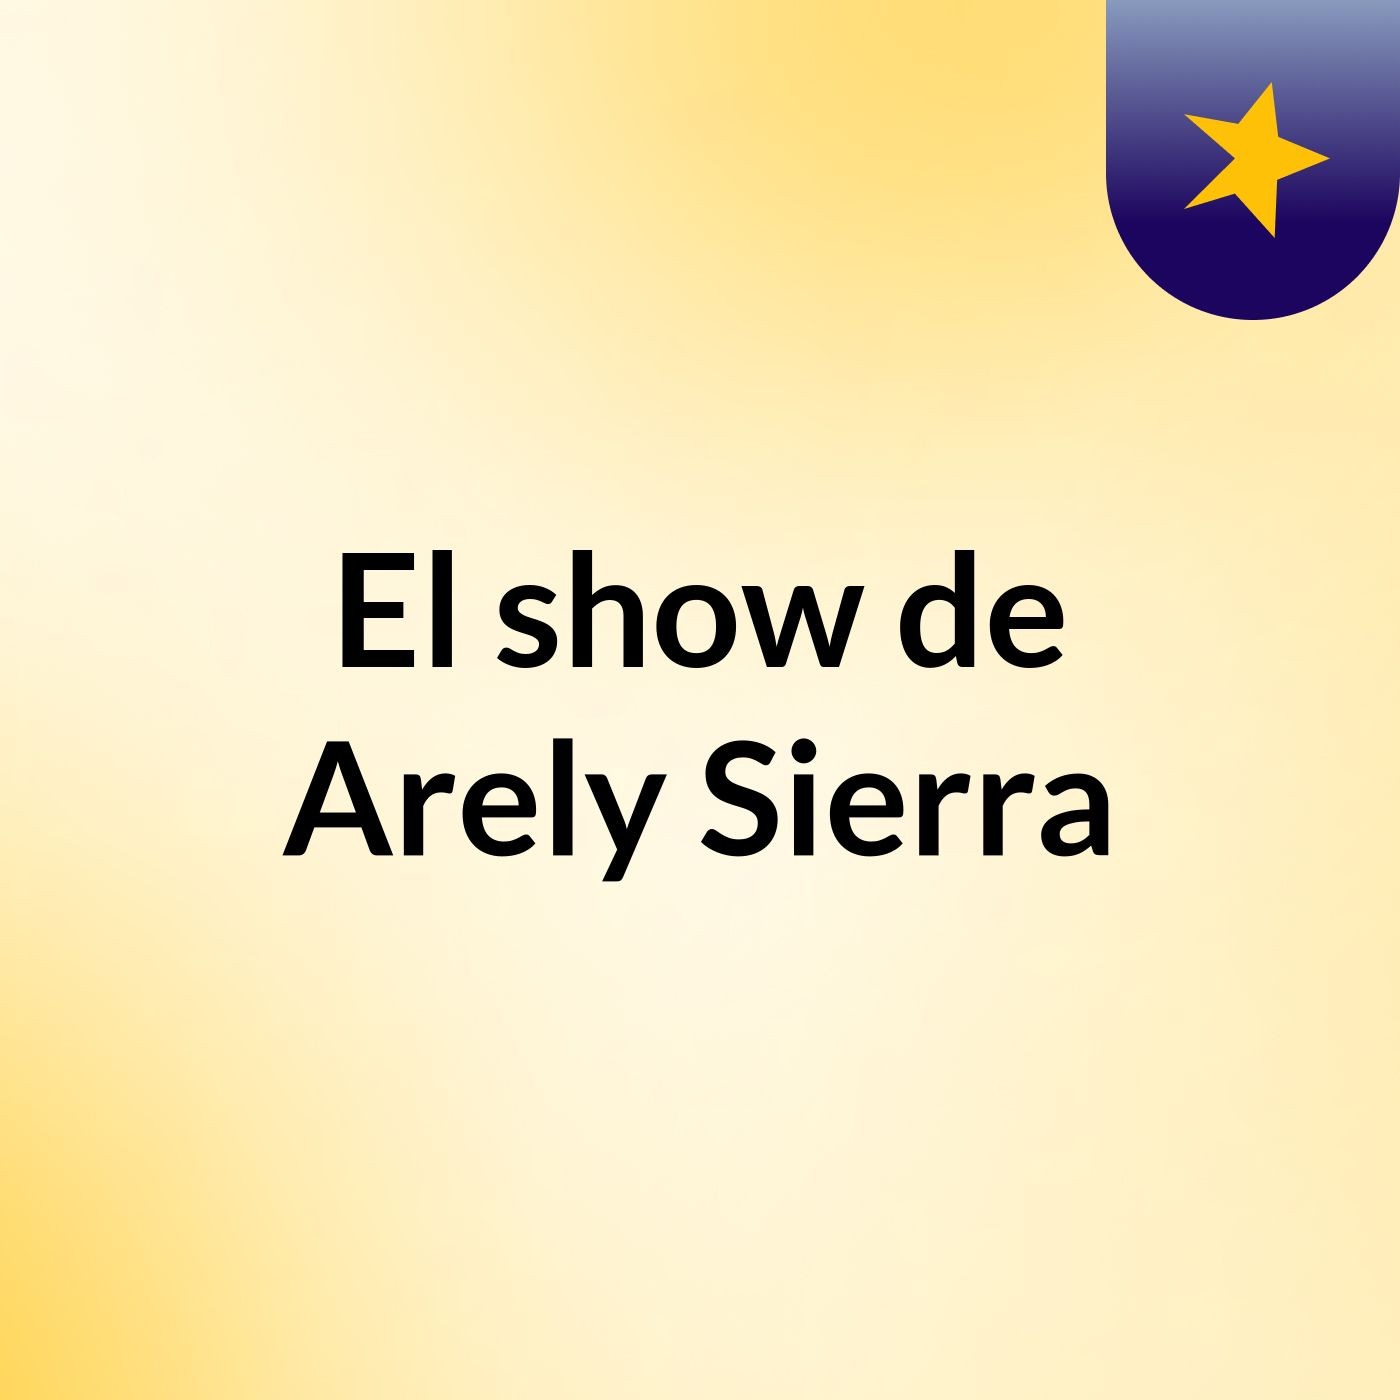 El show de Arely Sierra